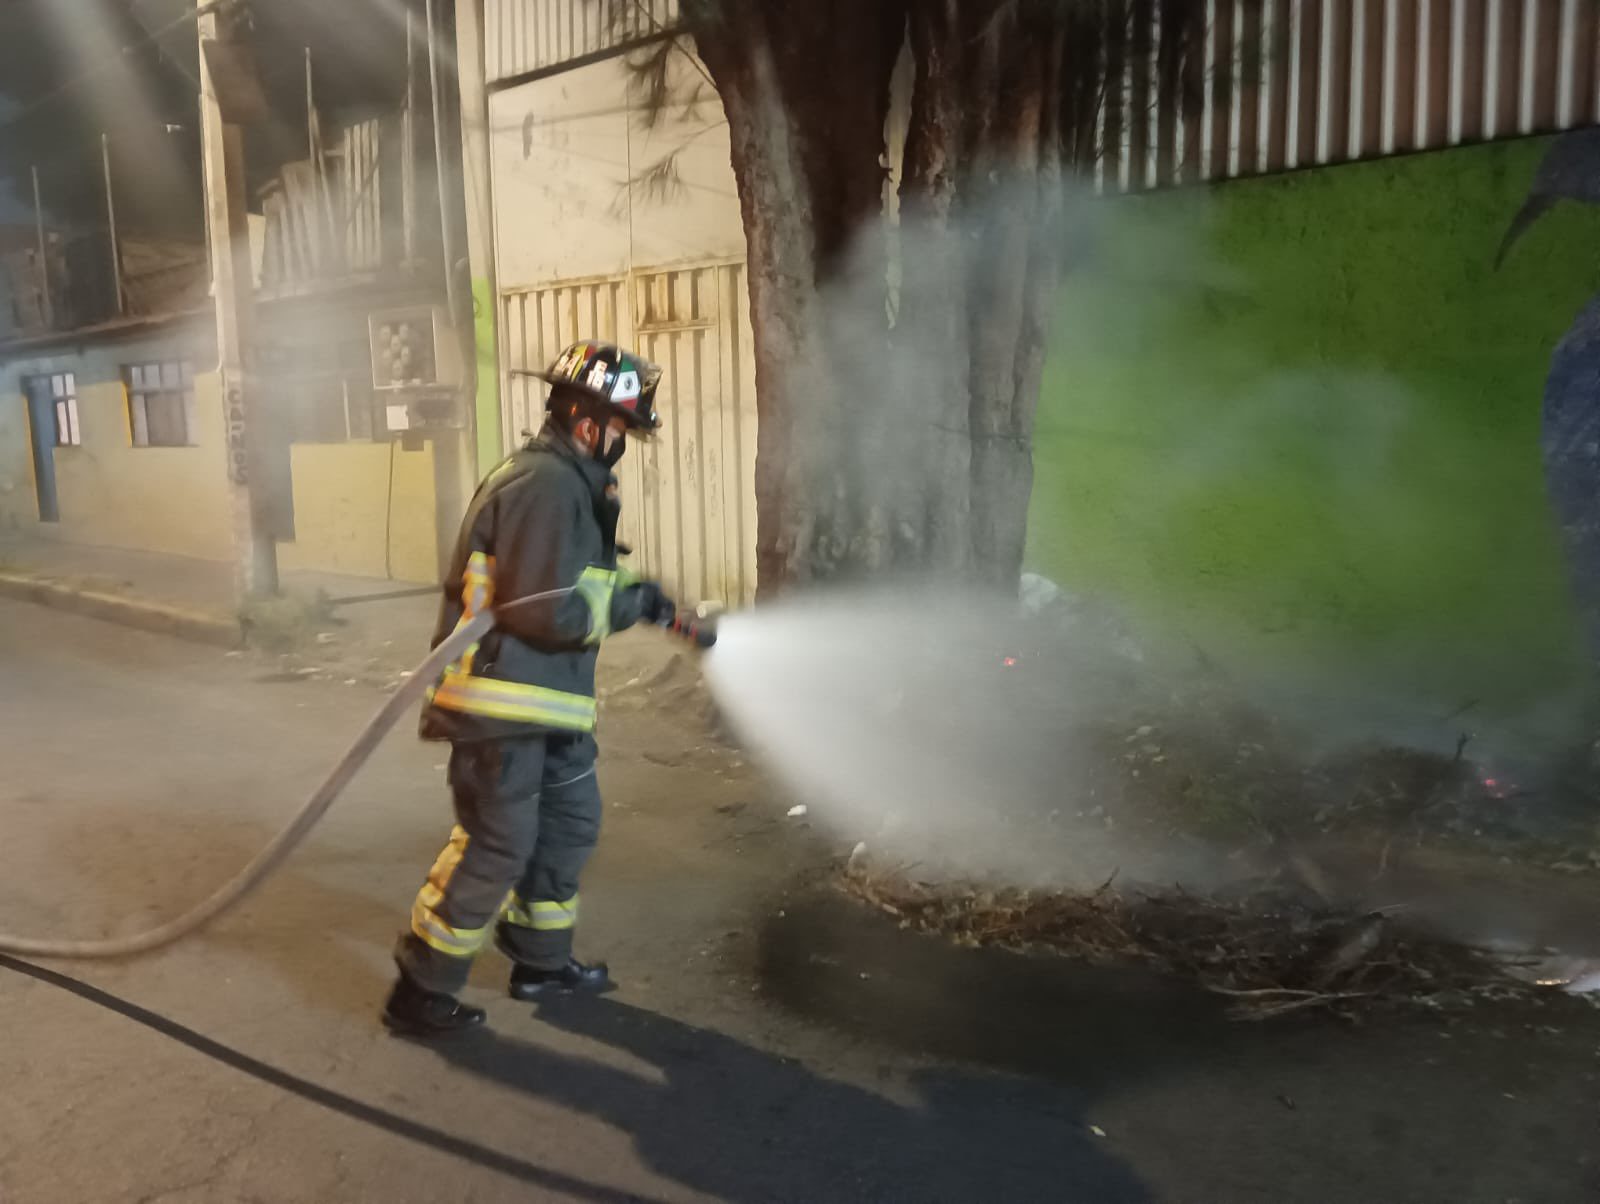 Advierten de bomberos “patito” en CDMX que piden dinero para gestionar apoyos